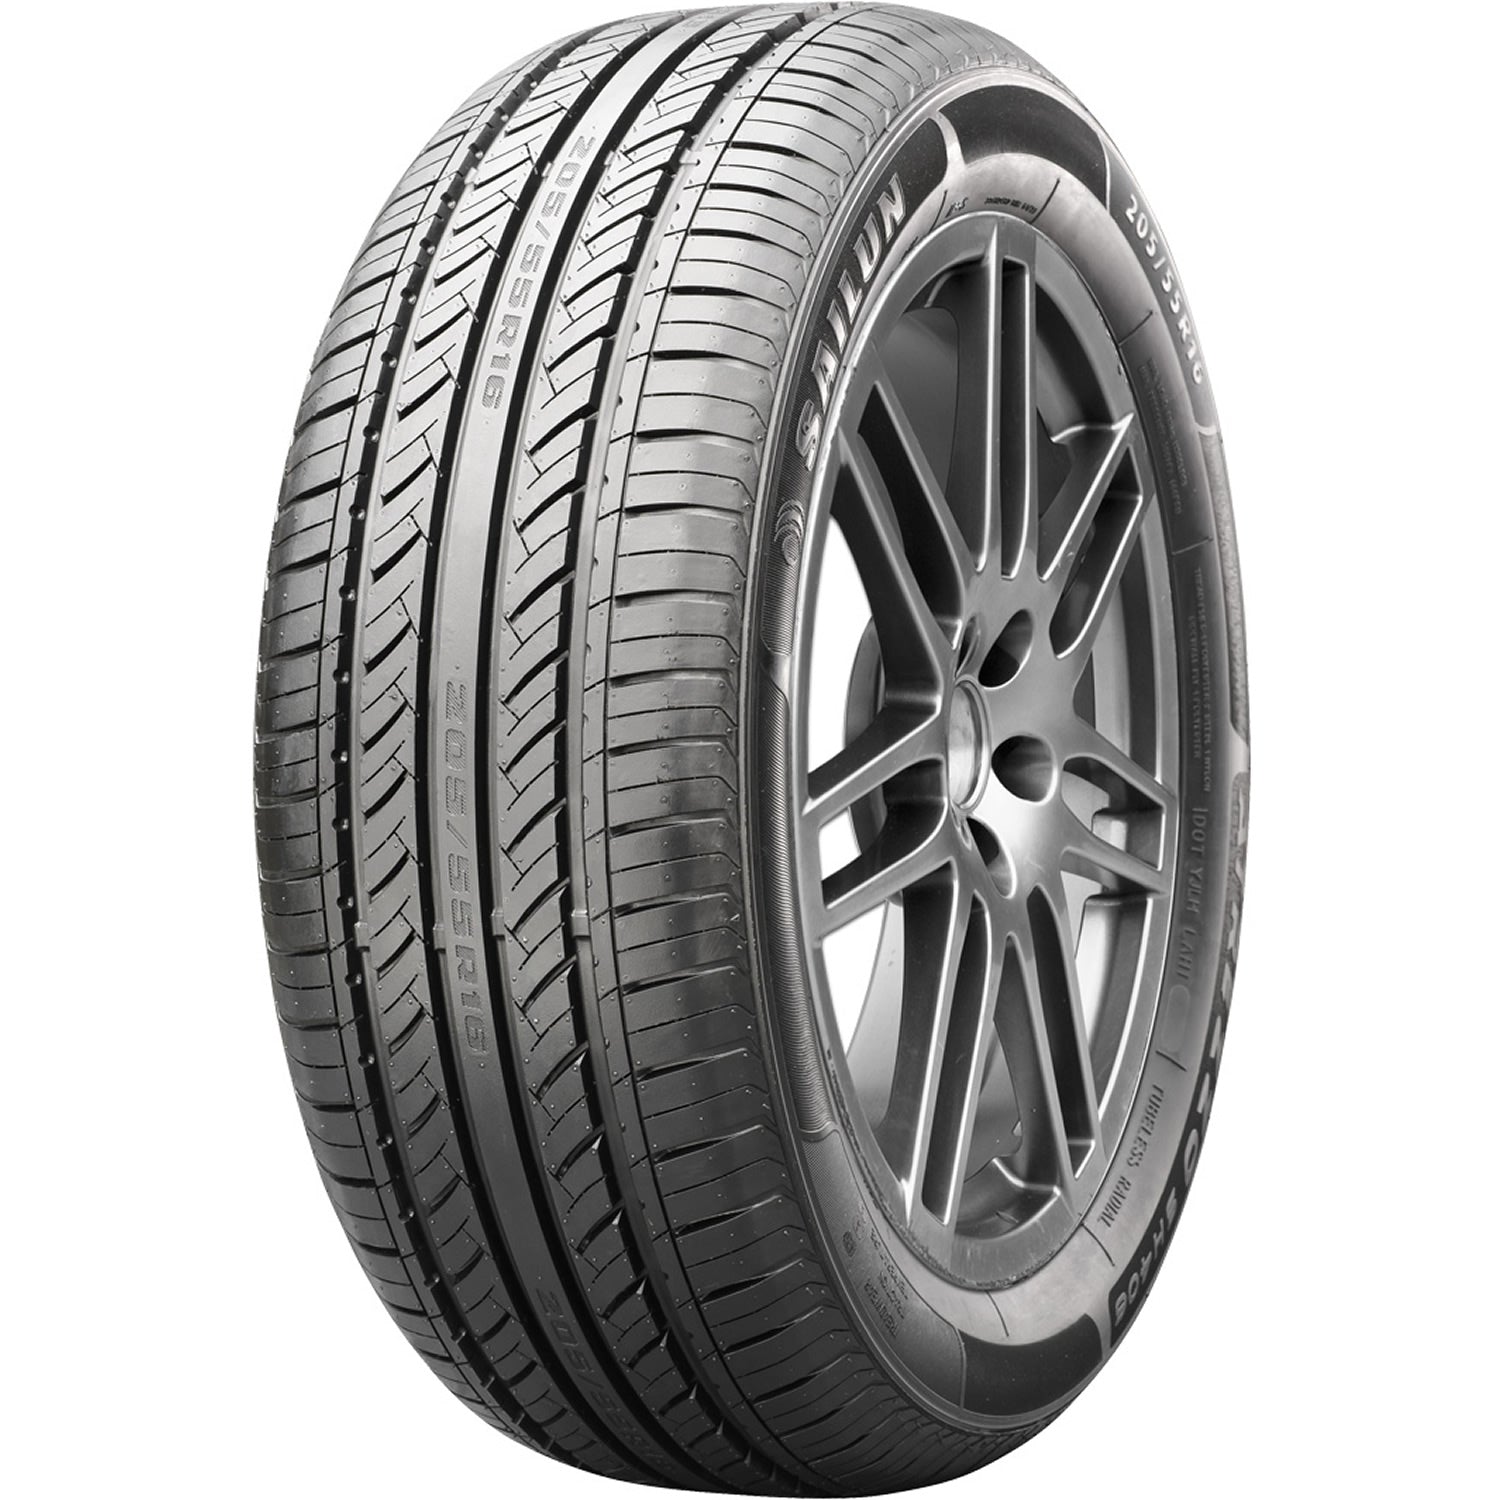 SAILUN ATREZZO SH406 195/50R15 (22.7X7.9R 15) Tires